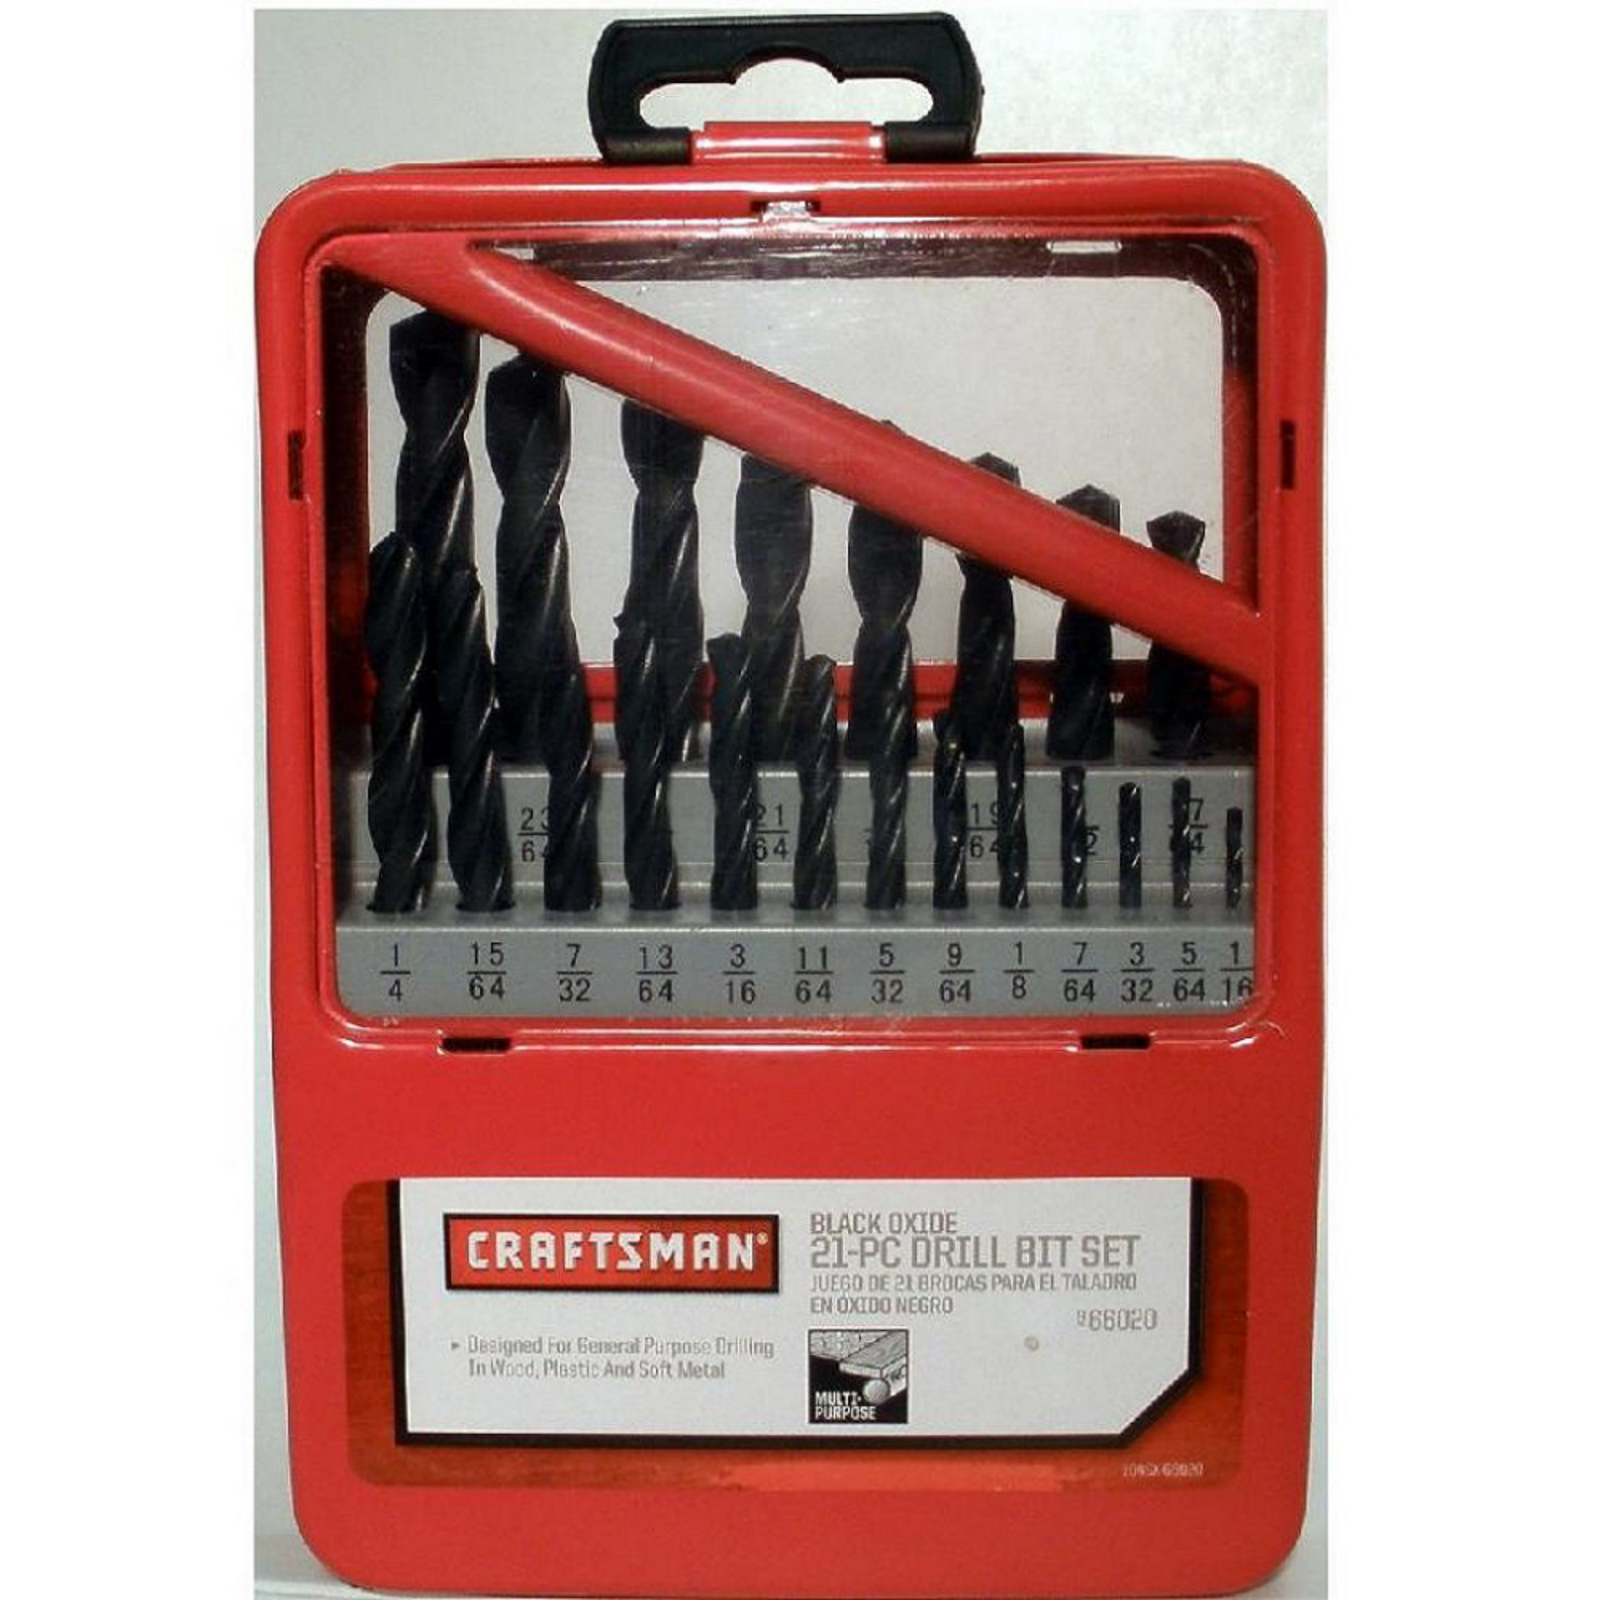 Craftsman 21pc Black Oxide Drill Bit Set 966020 for sale online 